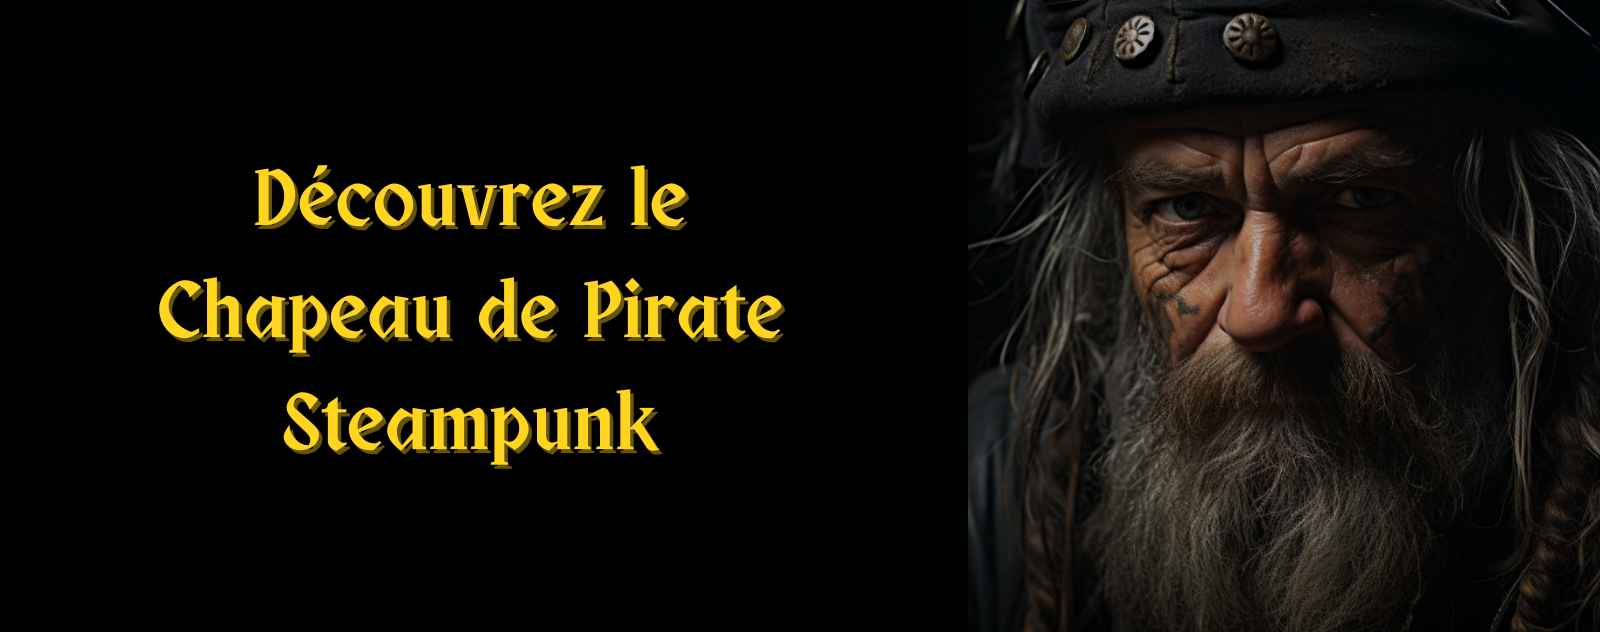 Chapeau de Pirate Steampunk